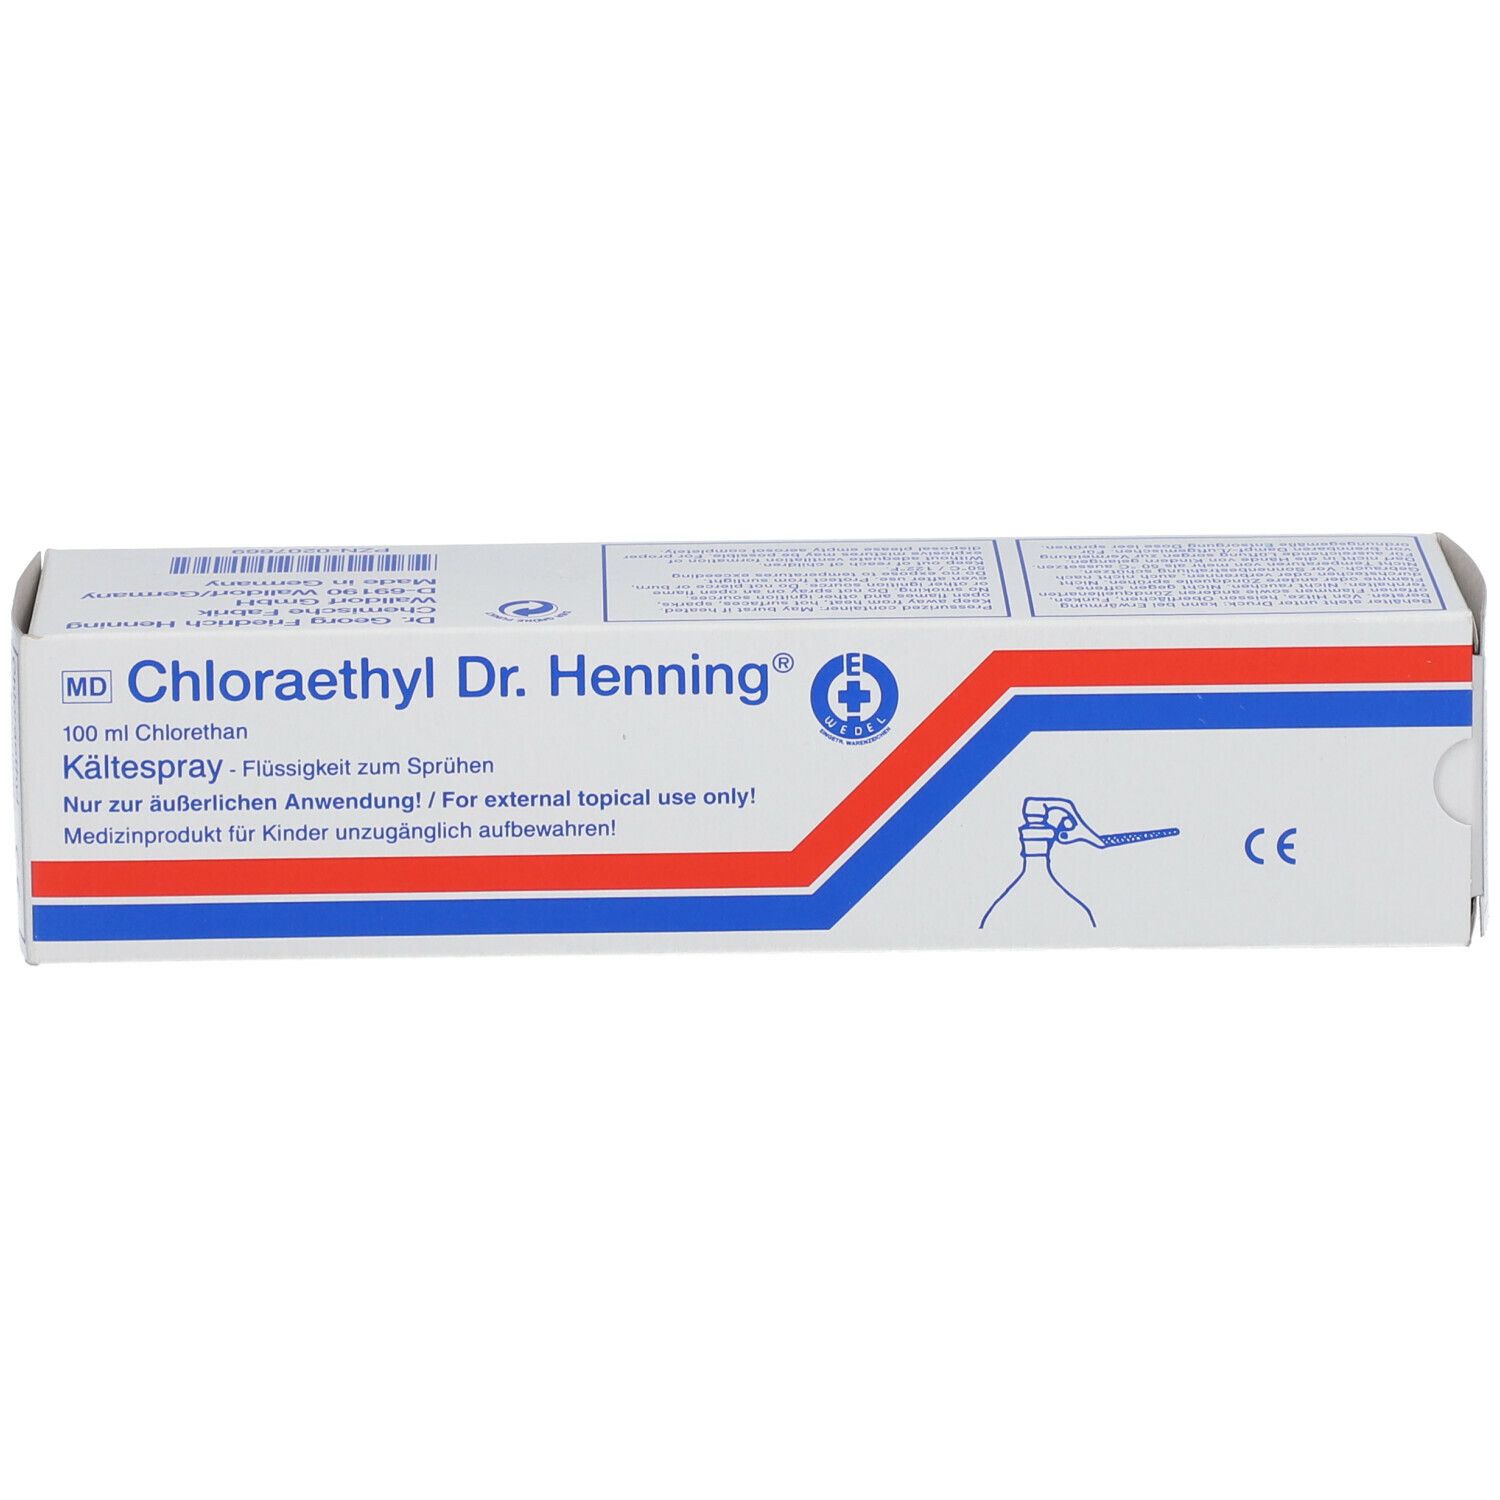 Chloraethyl Dr. Henning®